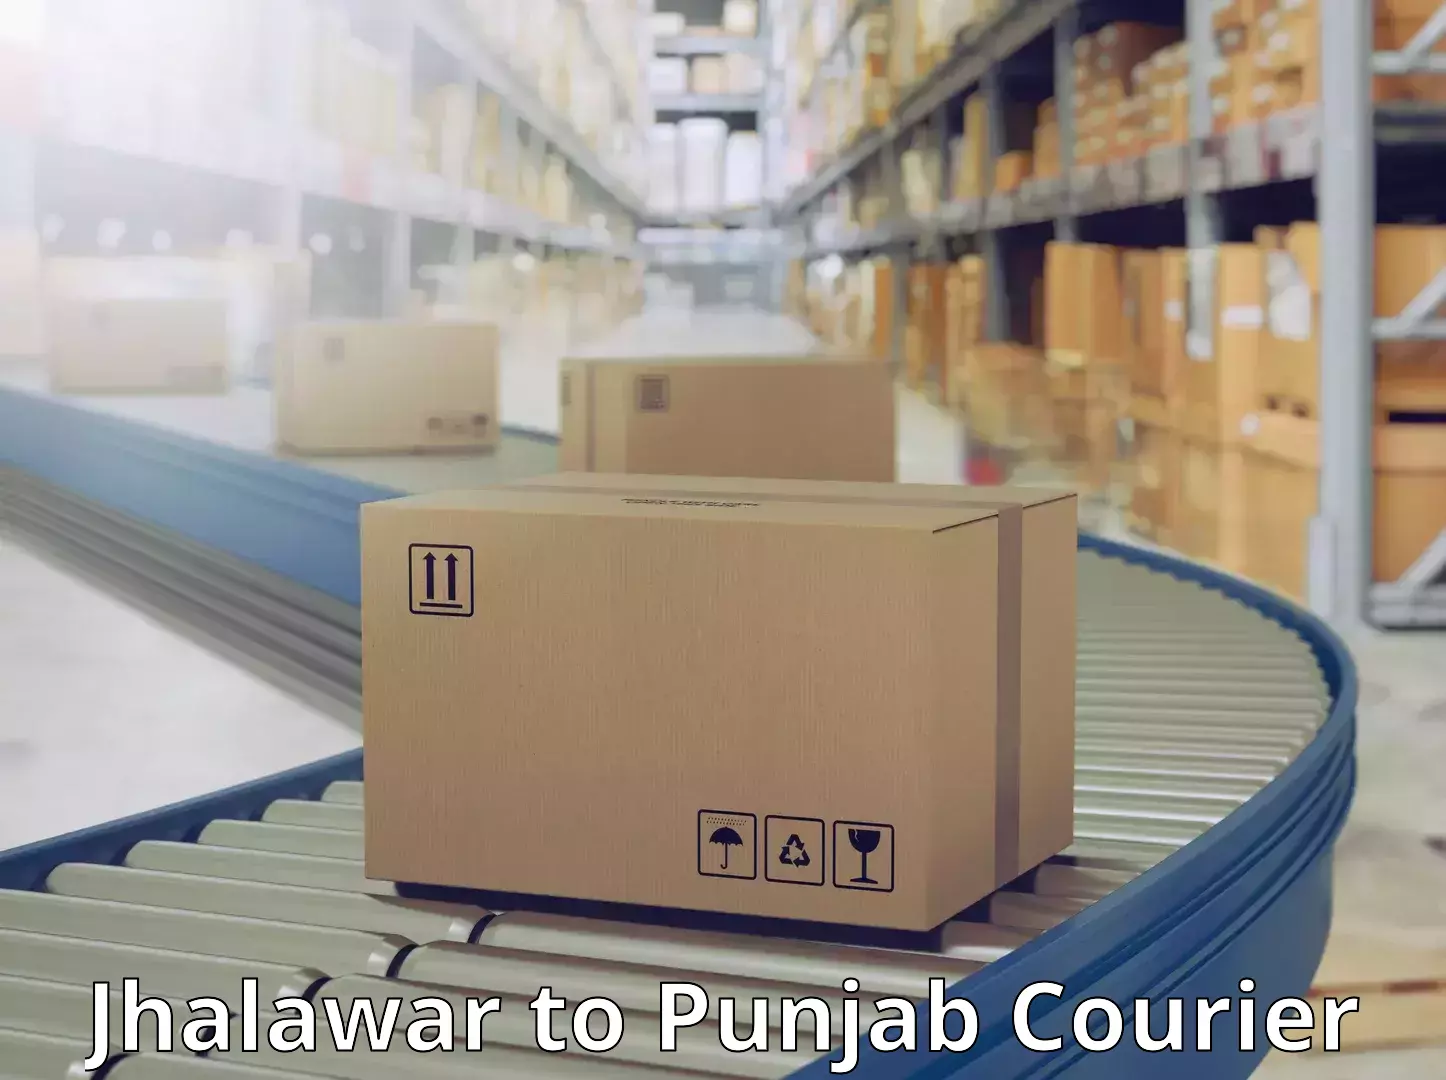 Courier service comparison Jhalawar to Punjab